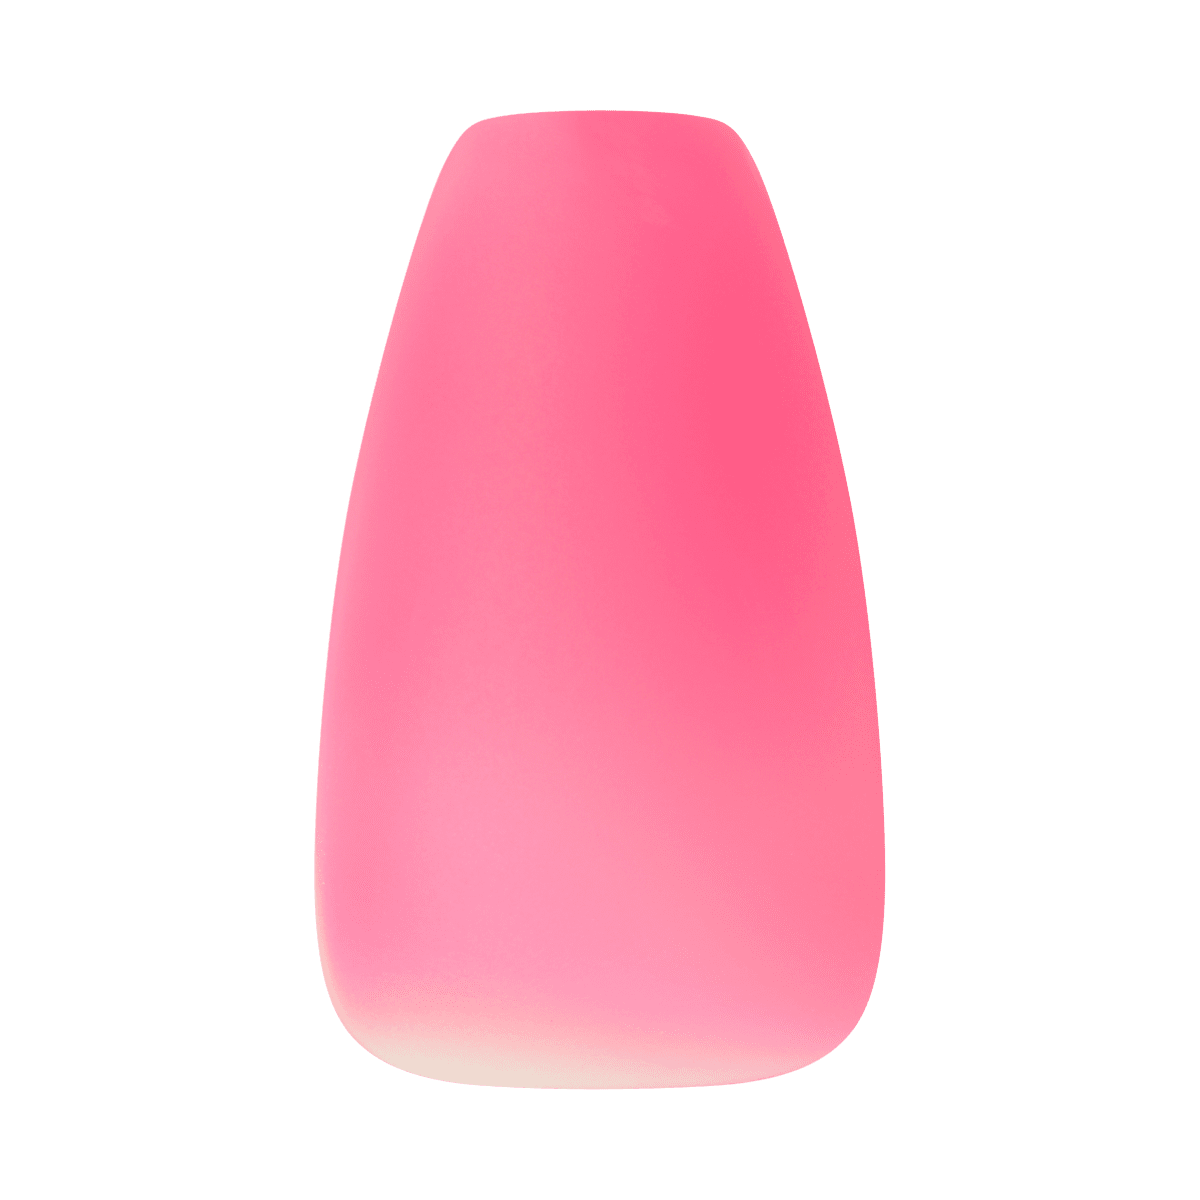 KISS Jelly Fantasy Nails - Fun &amp; Jelly